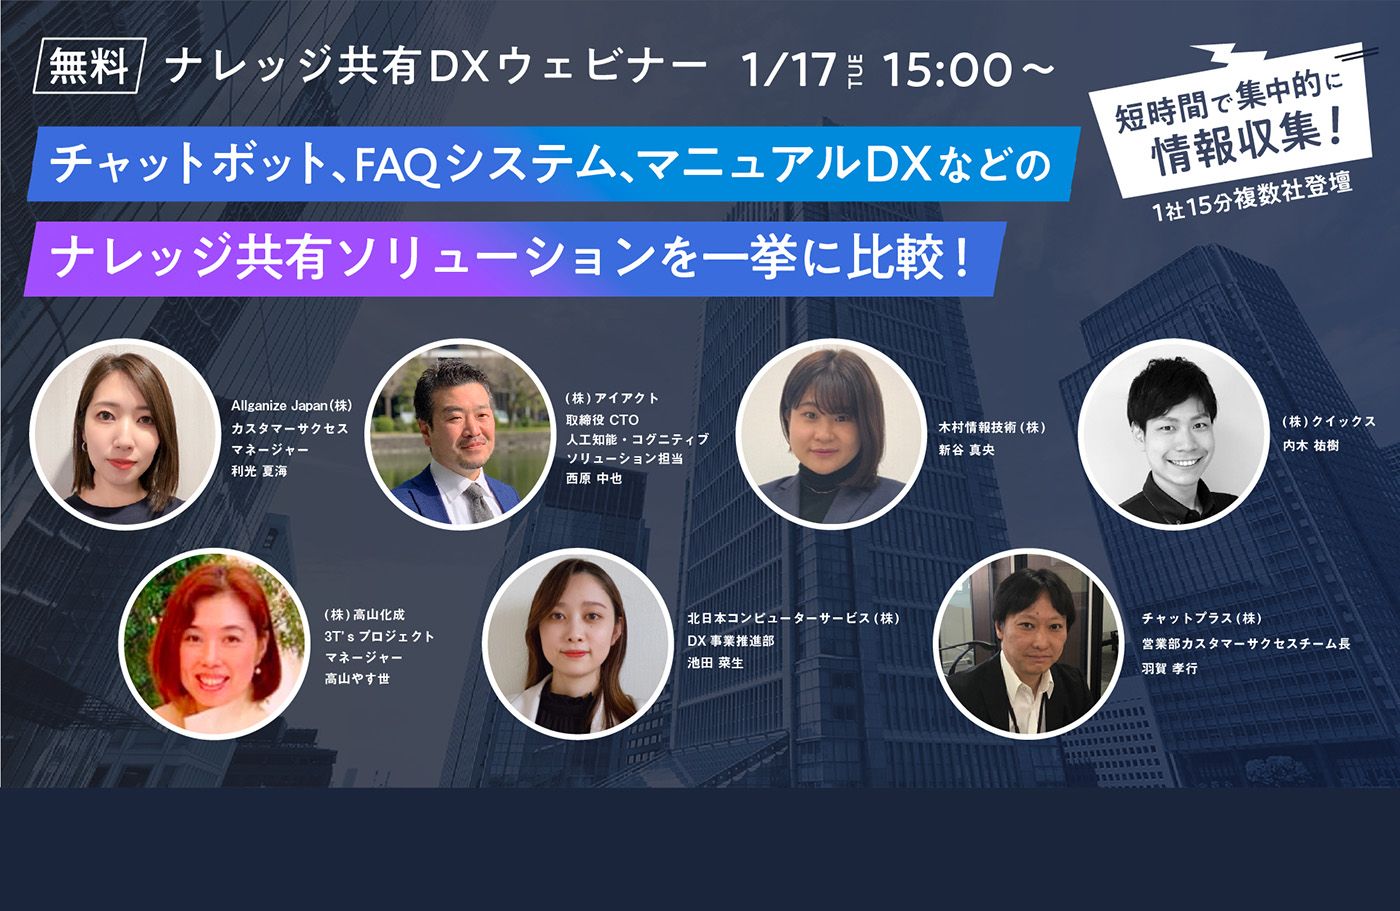 ■イベント告知■ DX EXPO オンライン「ナレッジ共有DXウェビナー」に登壇します！（1月17, 31日, 2月28日）